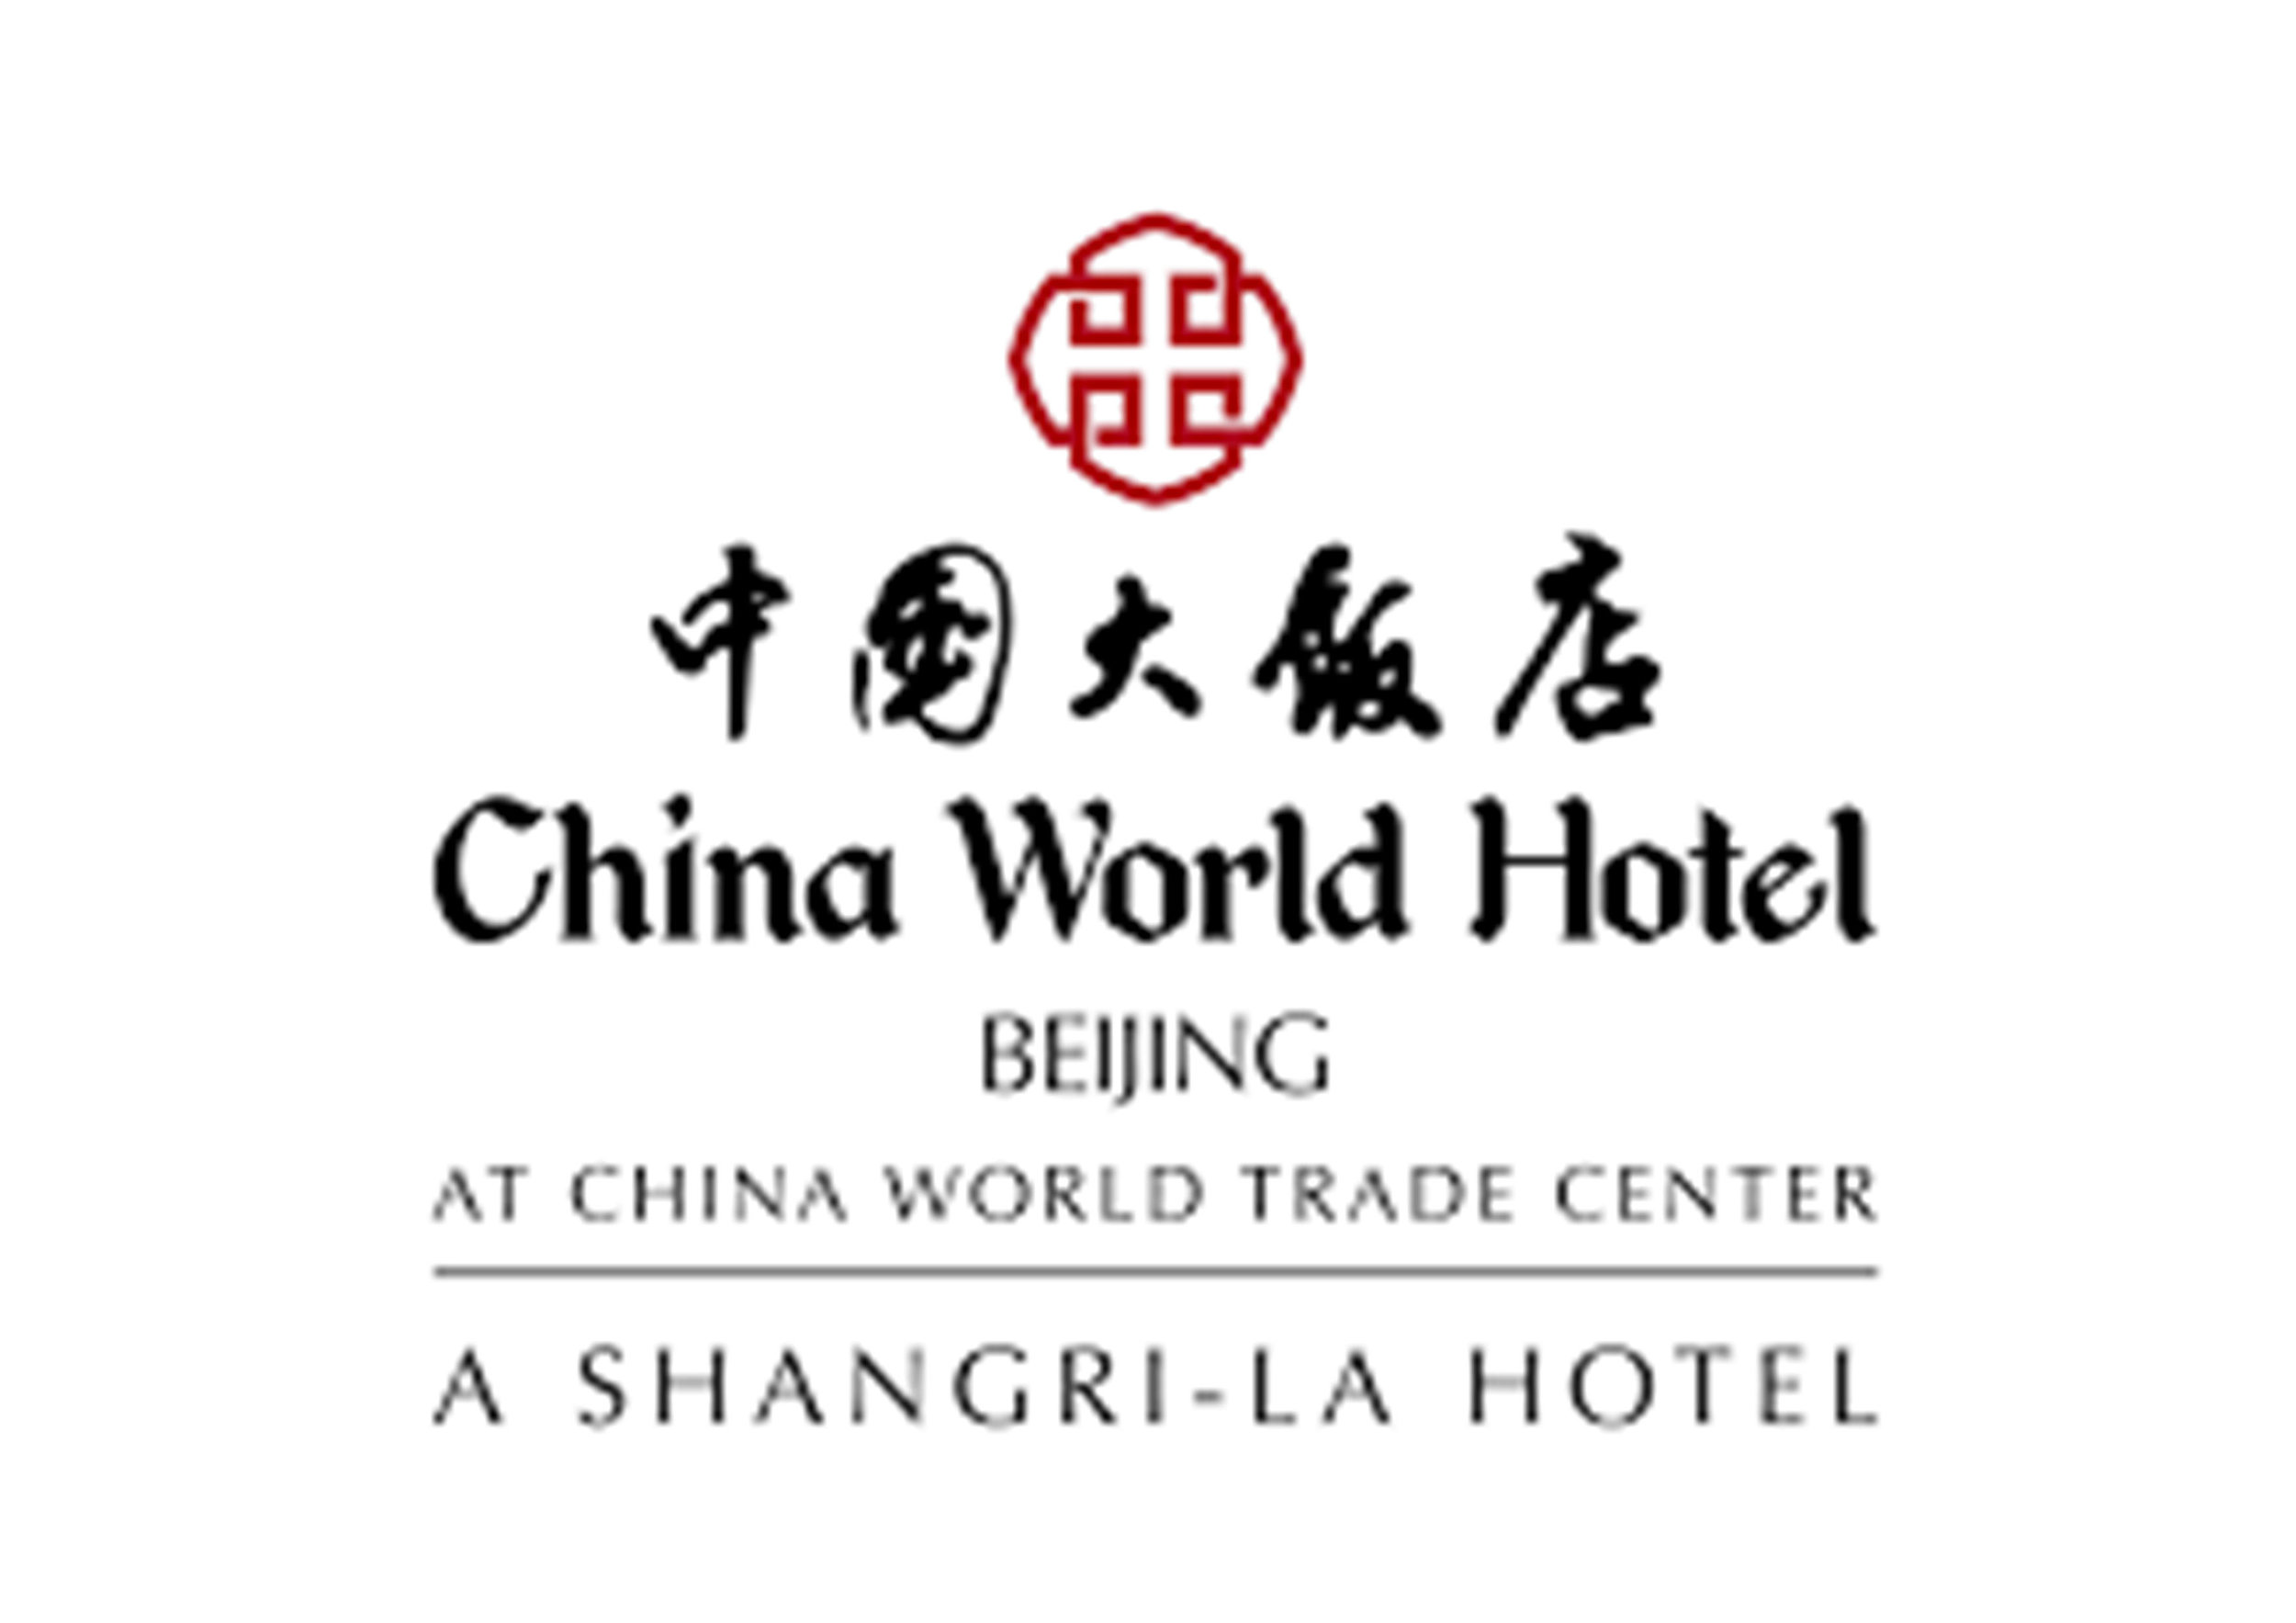 China World Hotel.jpg